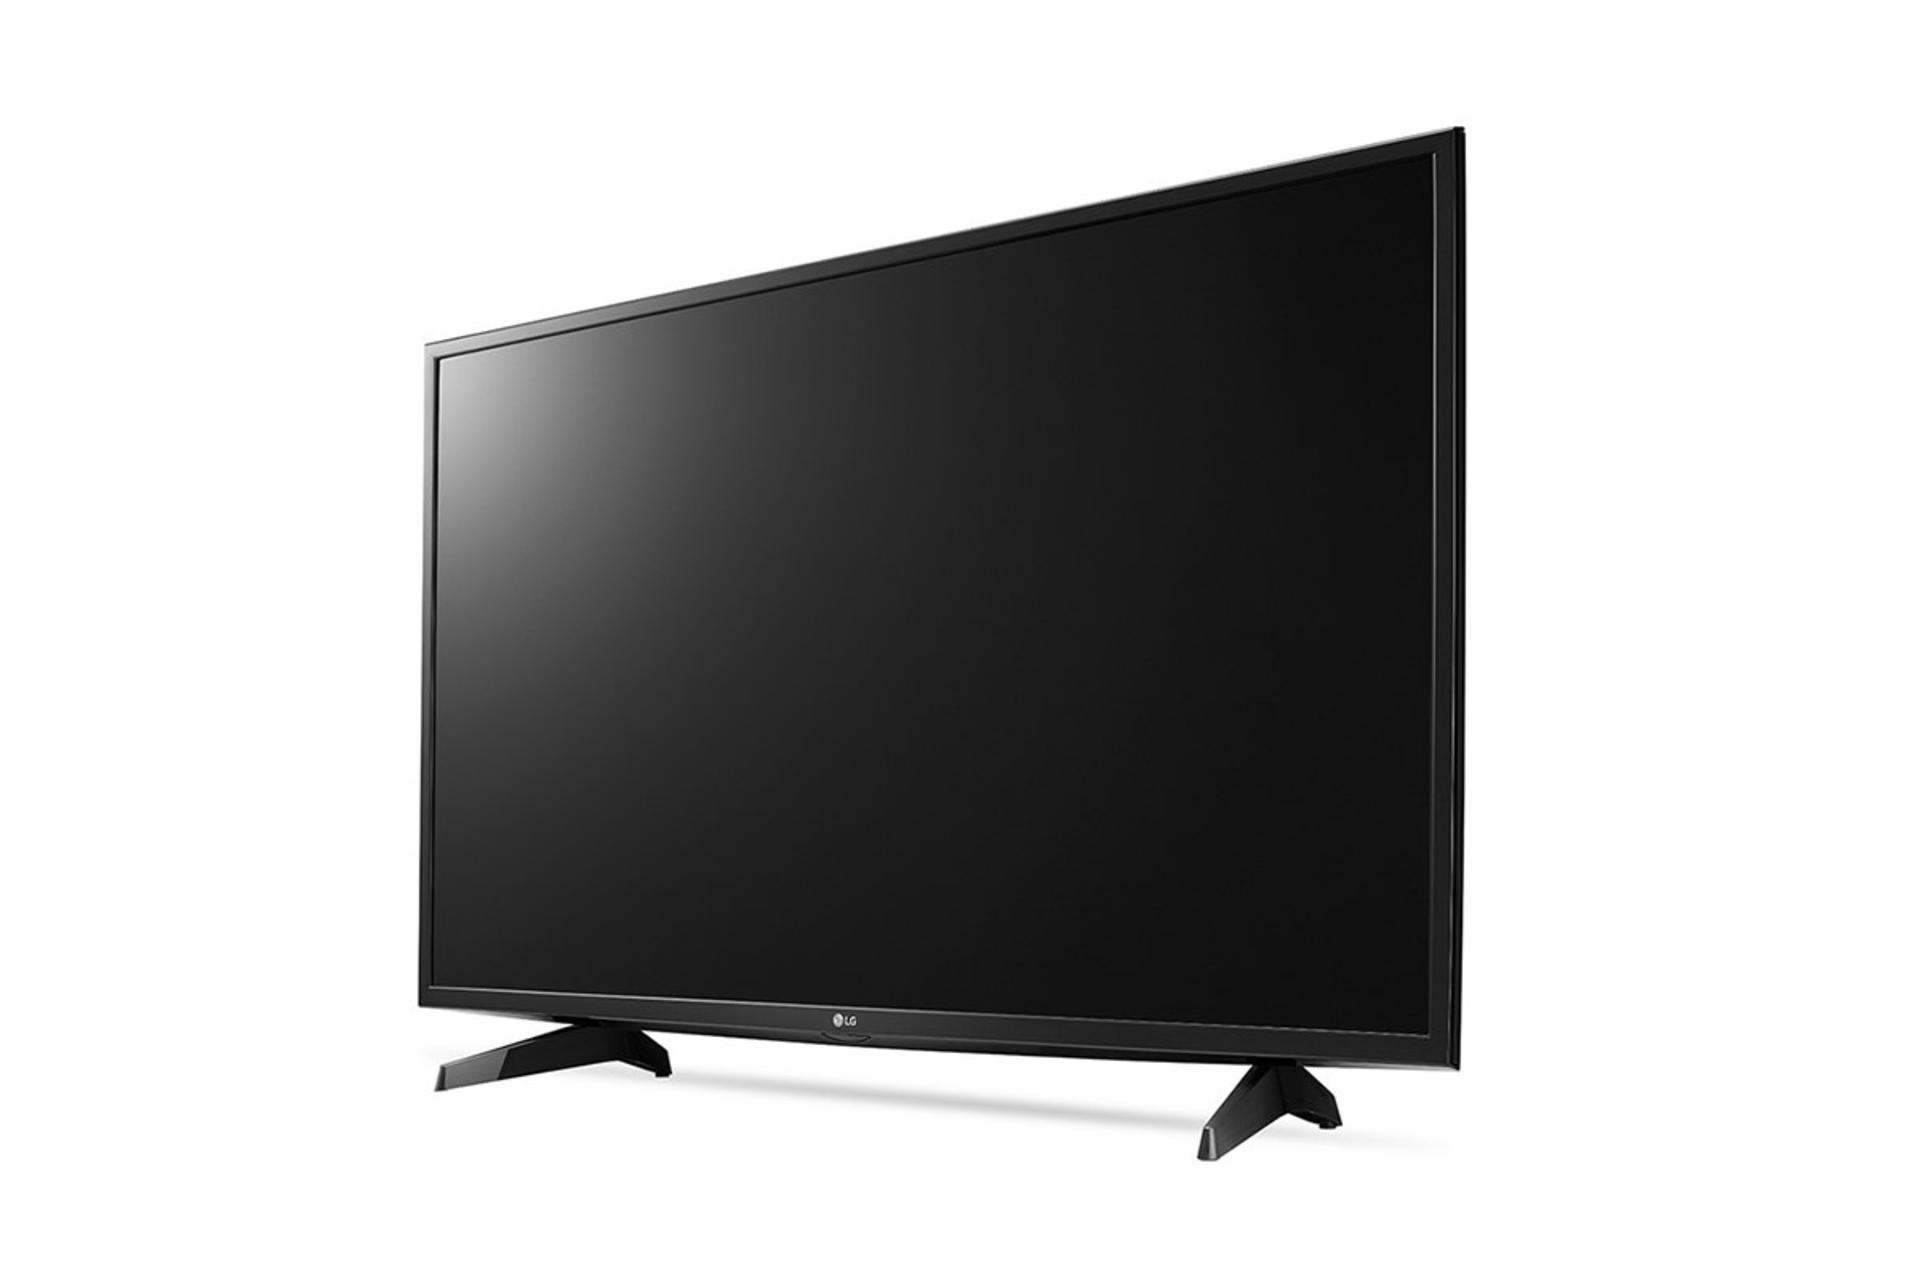 نمای نیم رخ تلویزیون ال جی LJ52100 مدل 43 اینچ با رنگ مشکی و صفحه خاموش